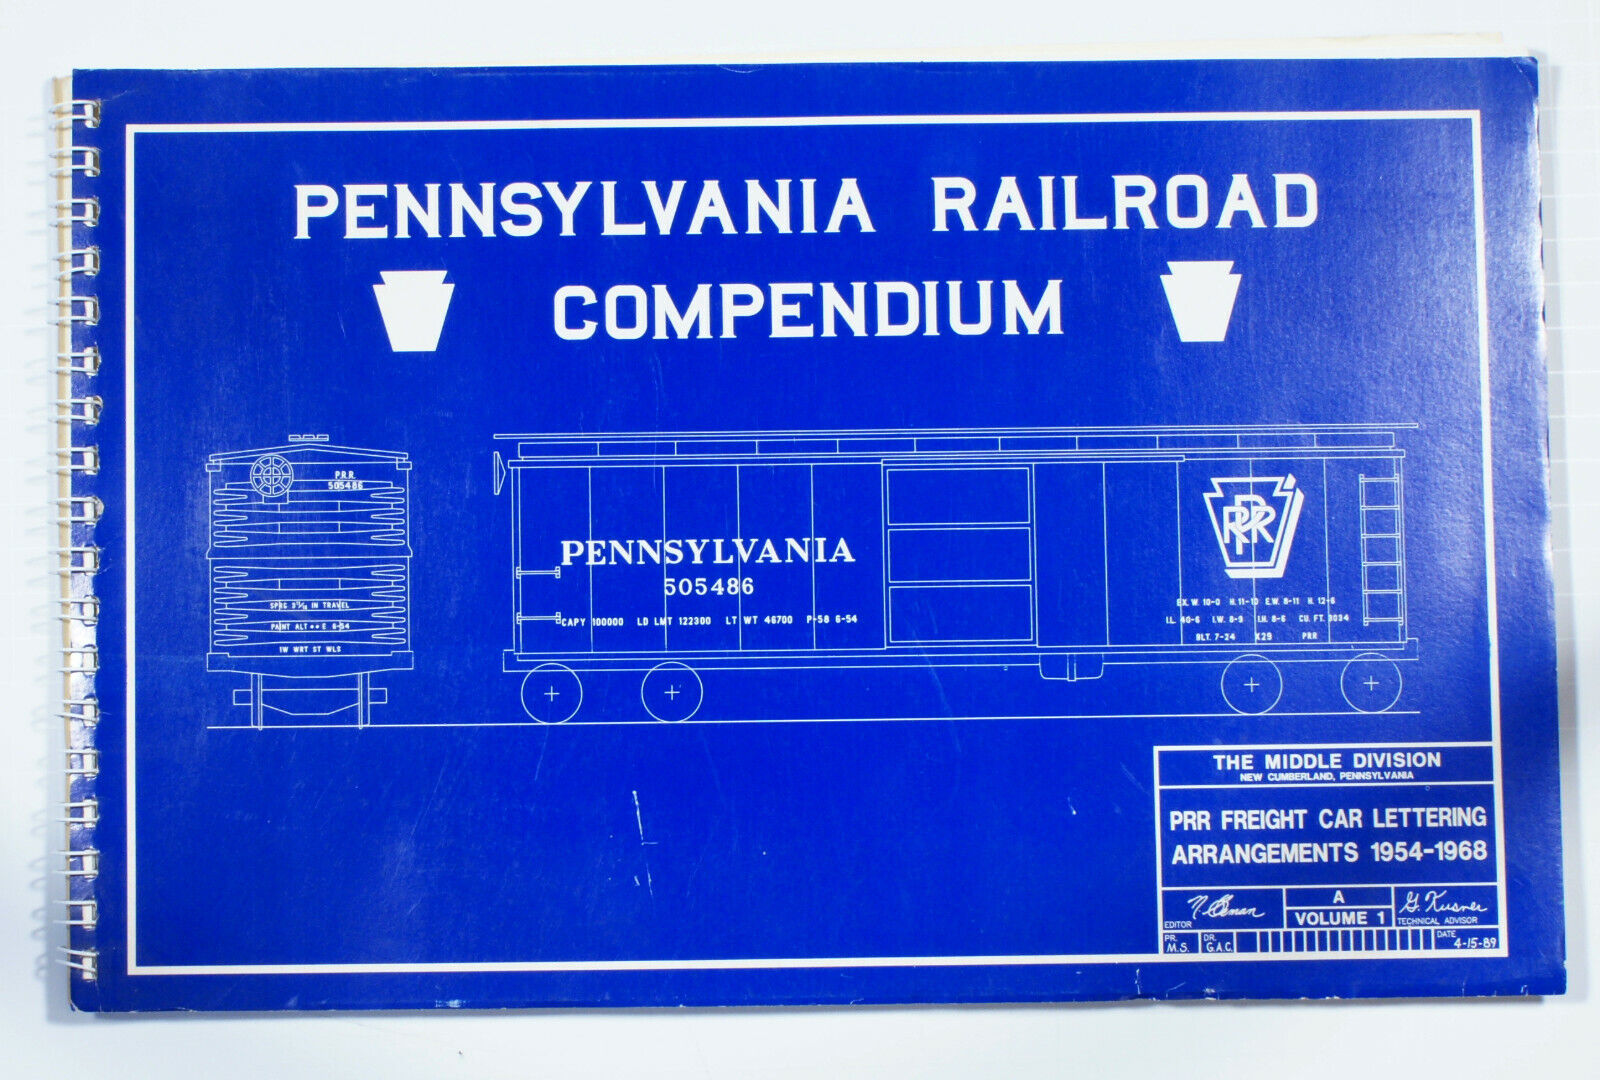 The Pennsylvania Railroad Compendium